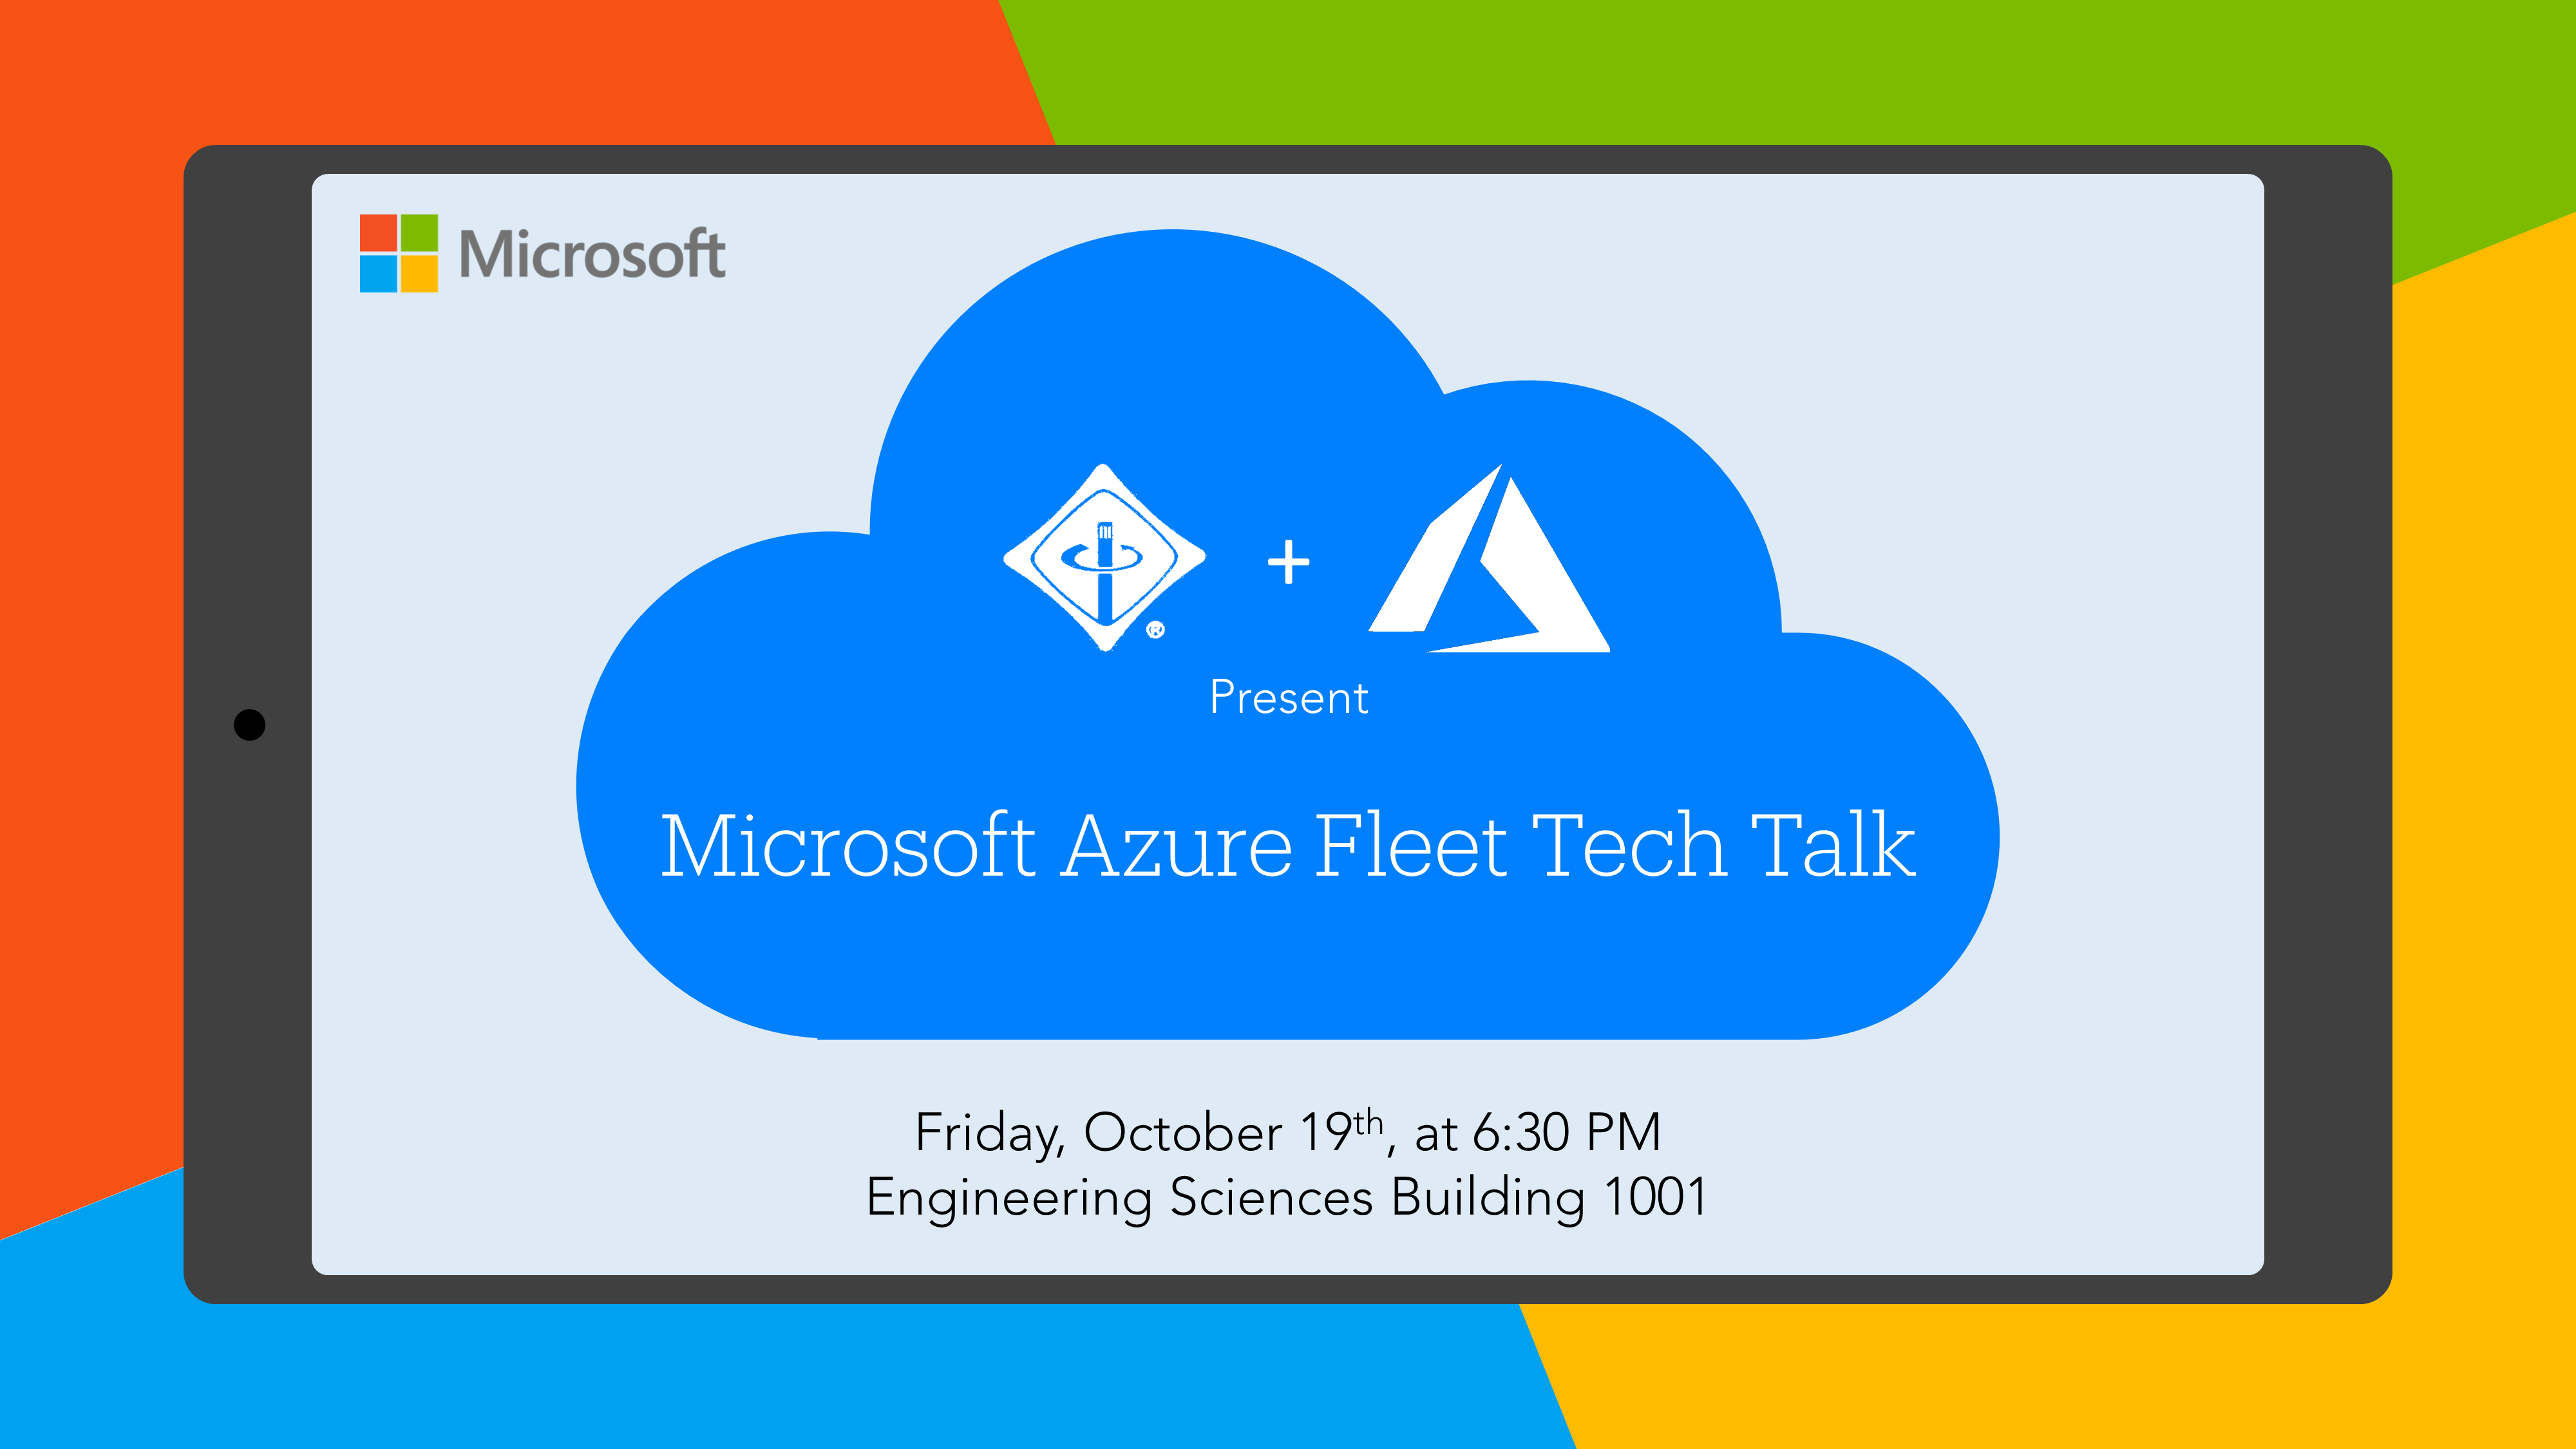 Microsoft Azure Fleet Tech Talk